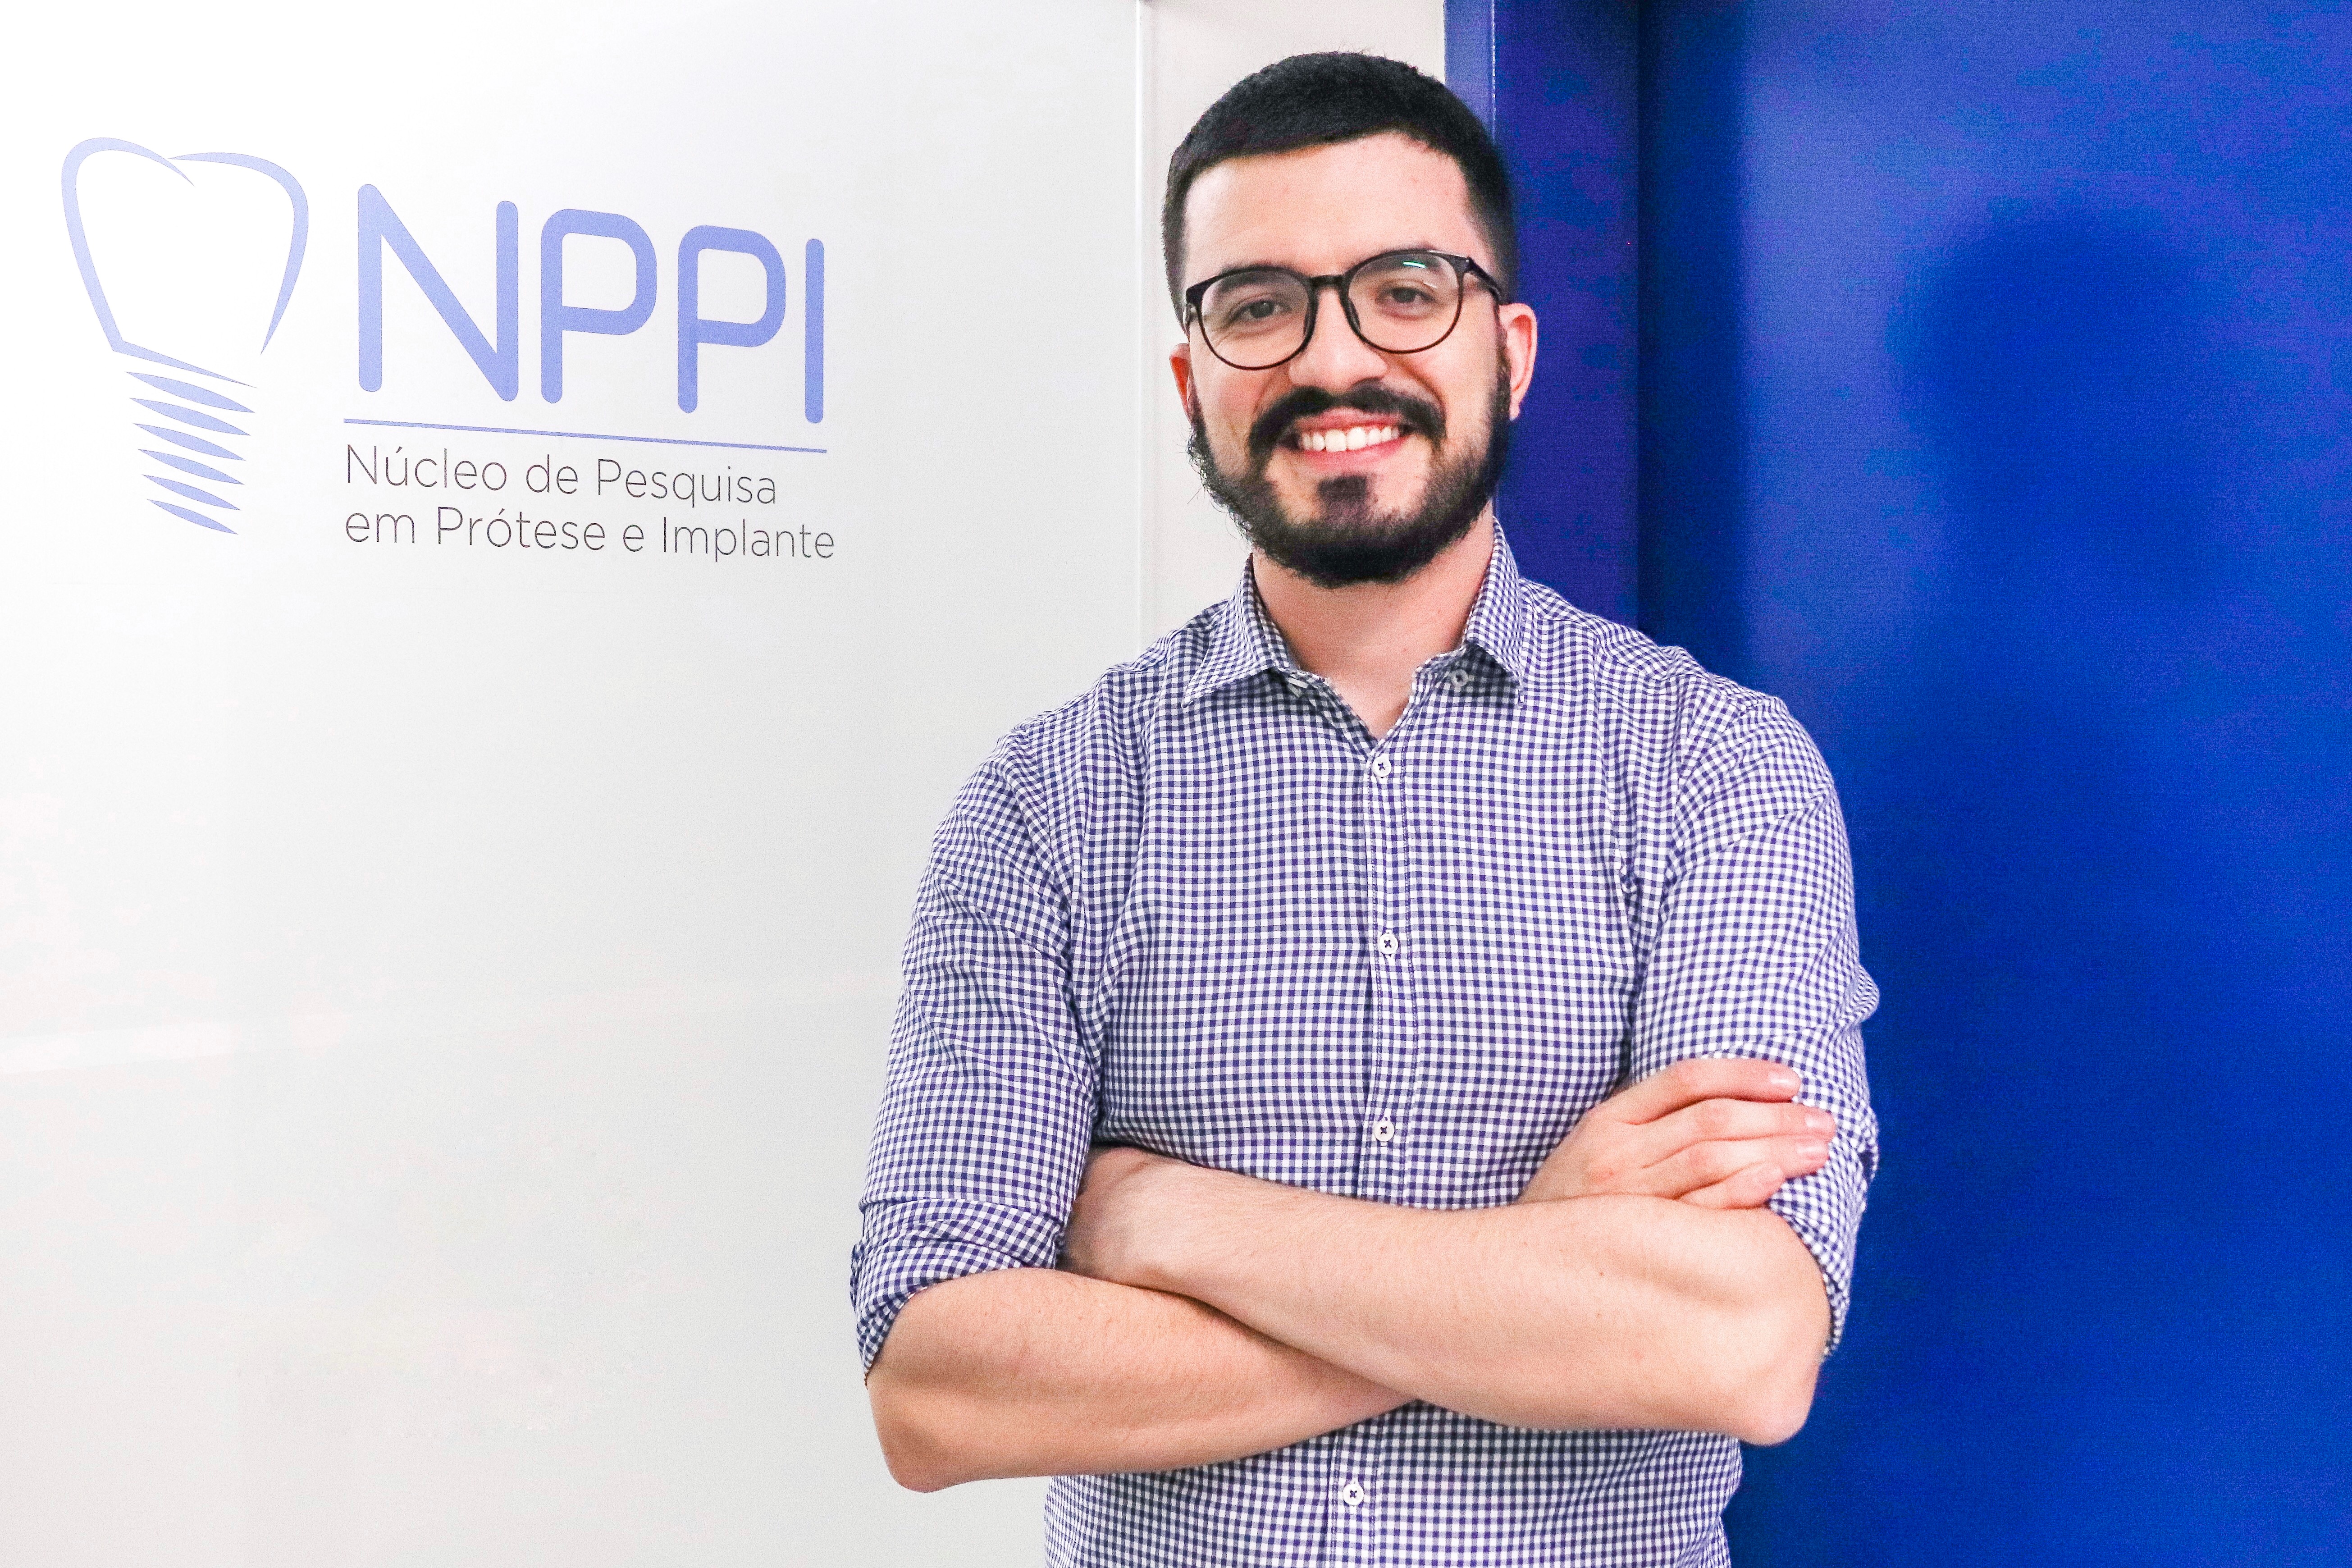 Túlio Nogueira, pós-doutorando na UFG, autor da tese vencedora do prêmio Capes 2019